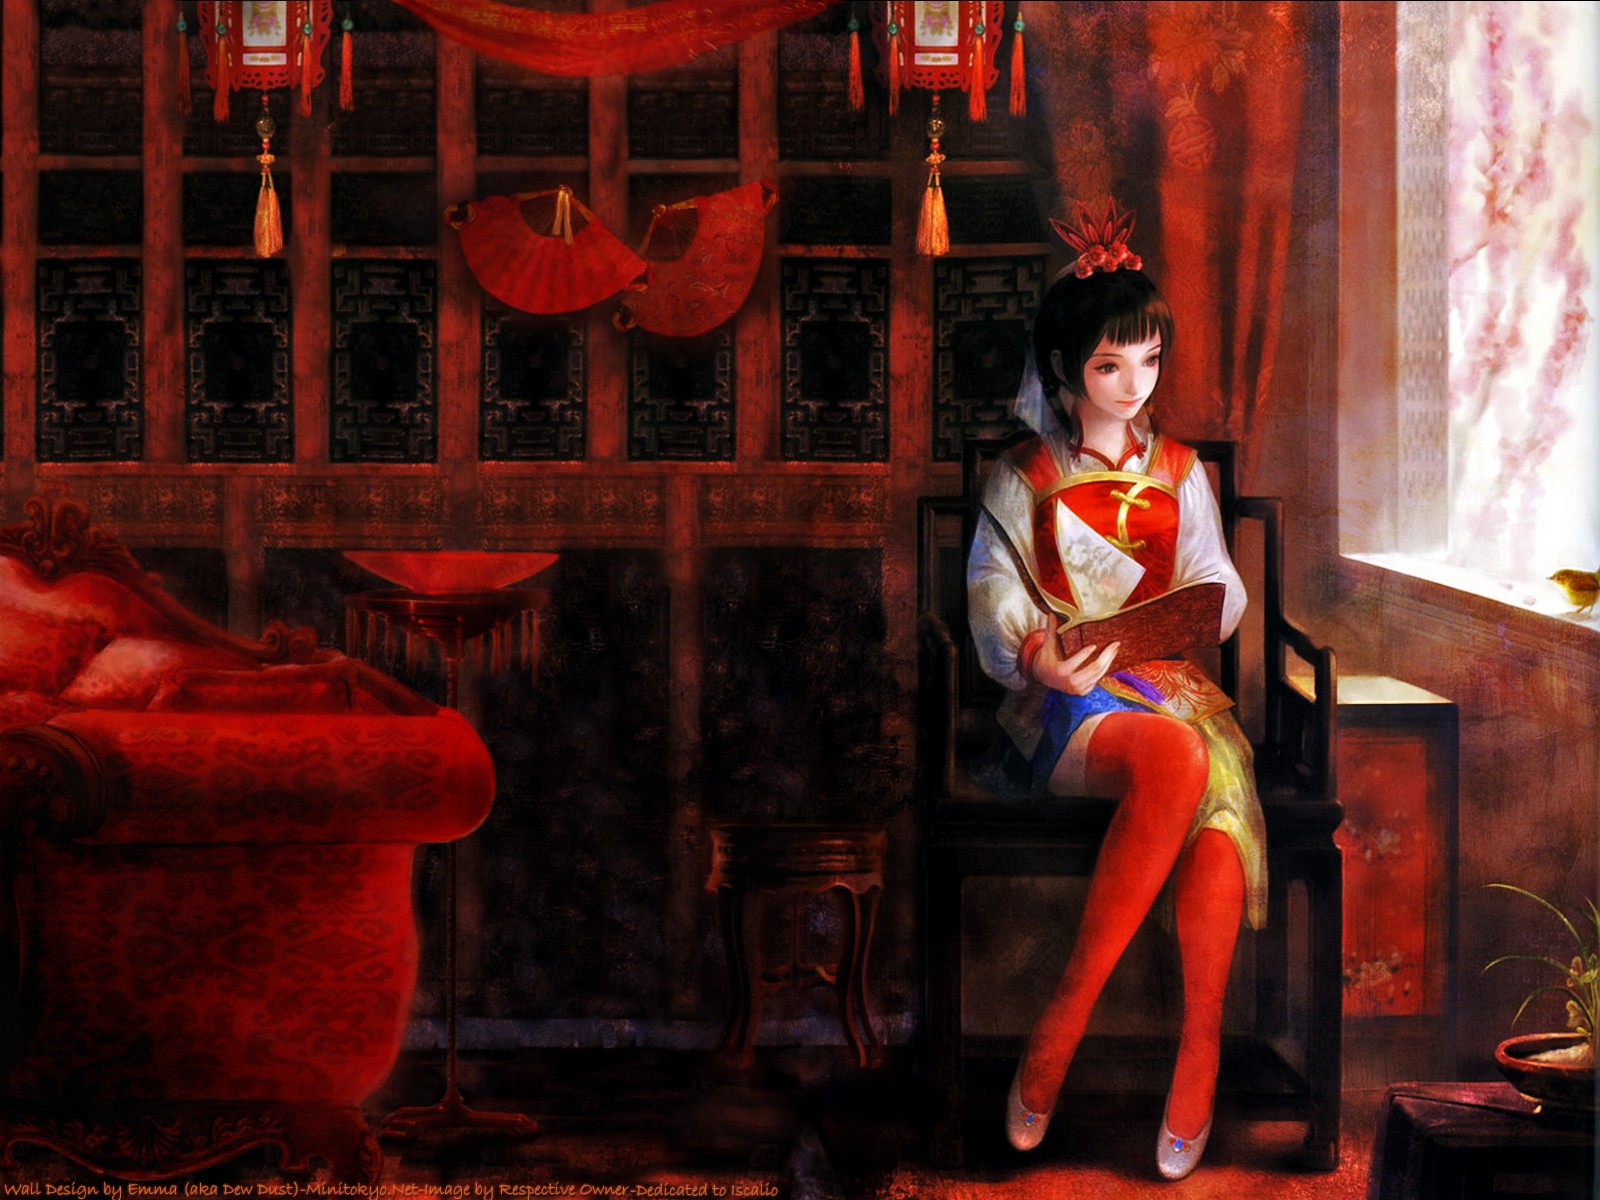 Anime 1600x1200 anime anime girls sitting legs dark hair indoors fantasy girl stockings red stockings women indoors fantasy art